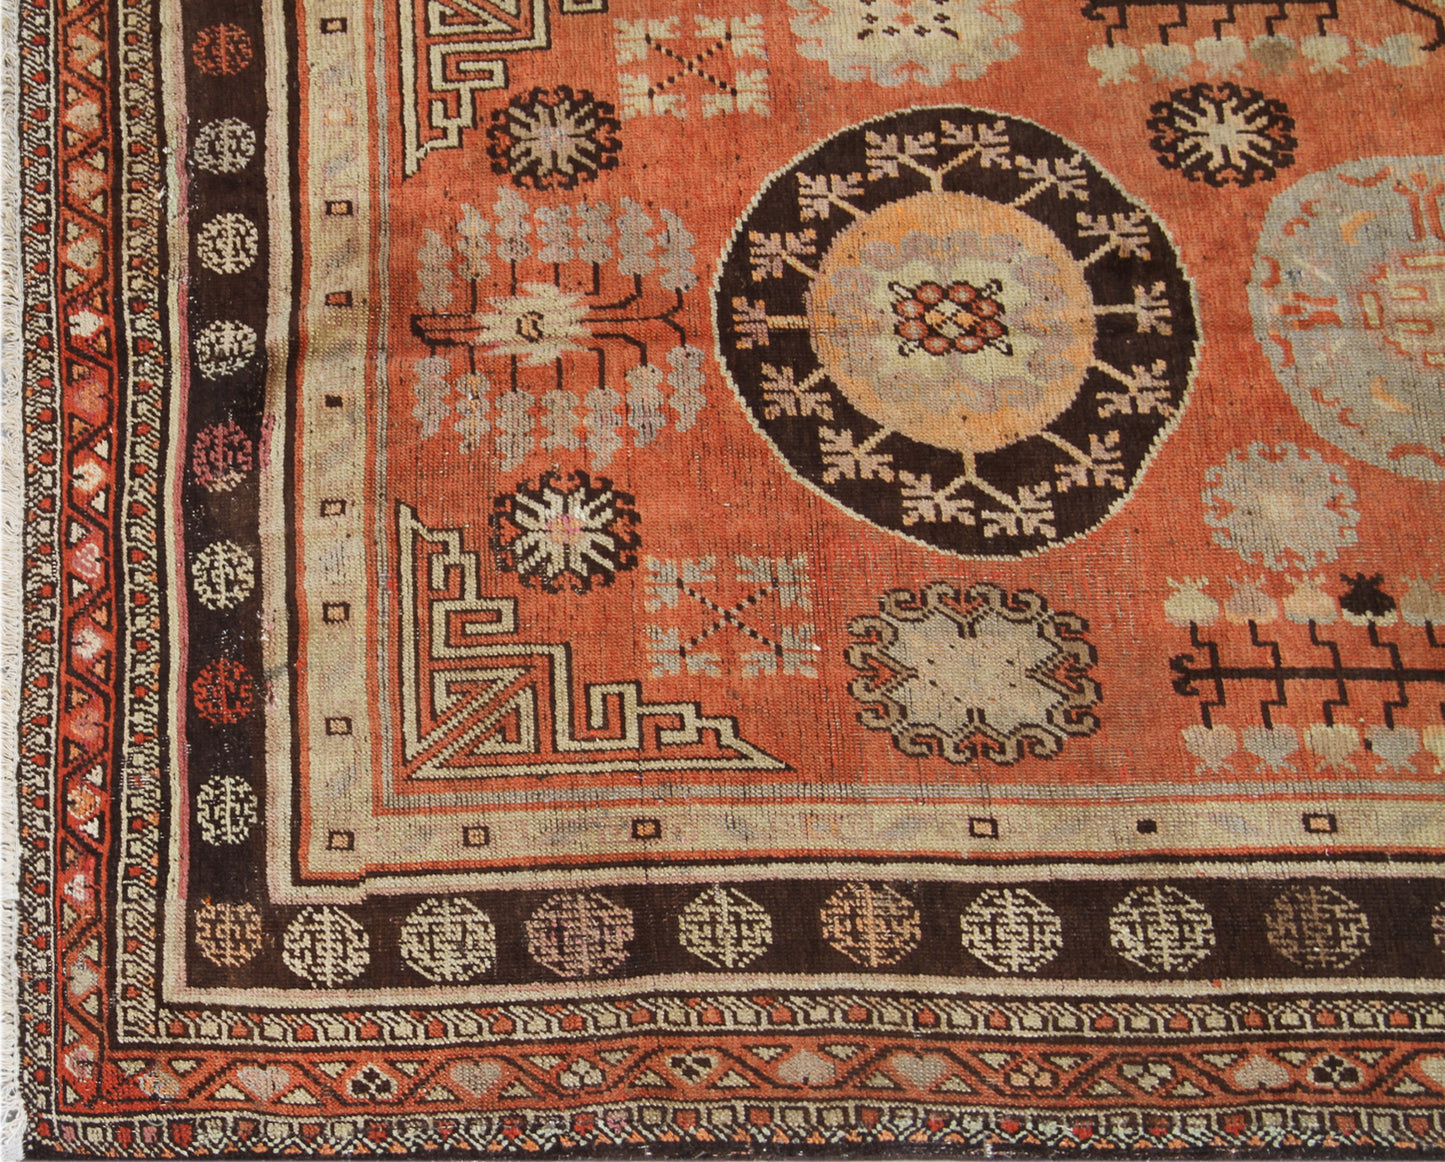 6'x10' Early 20th Century Khotan Samarkand Rug